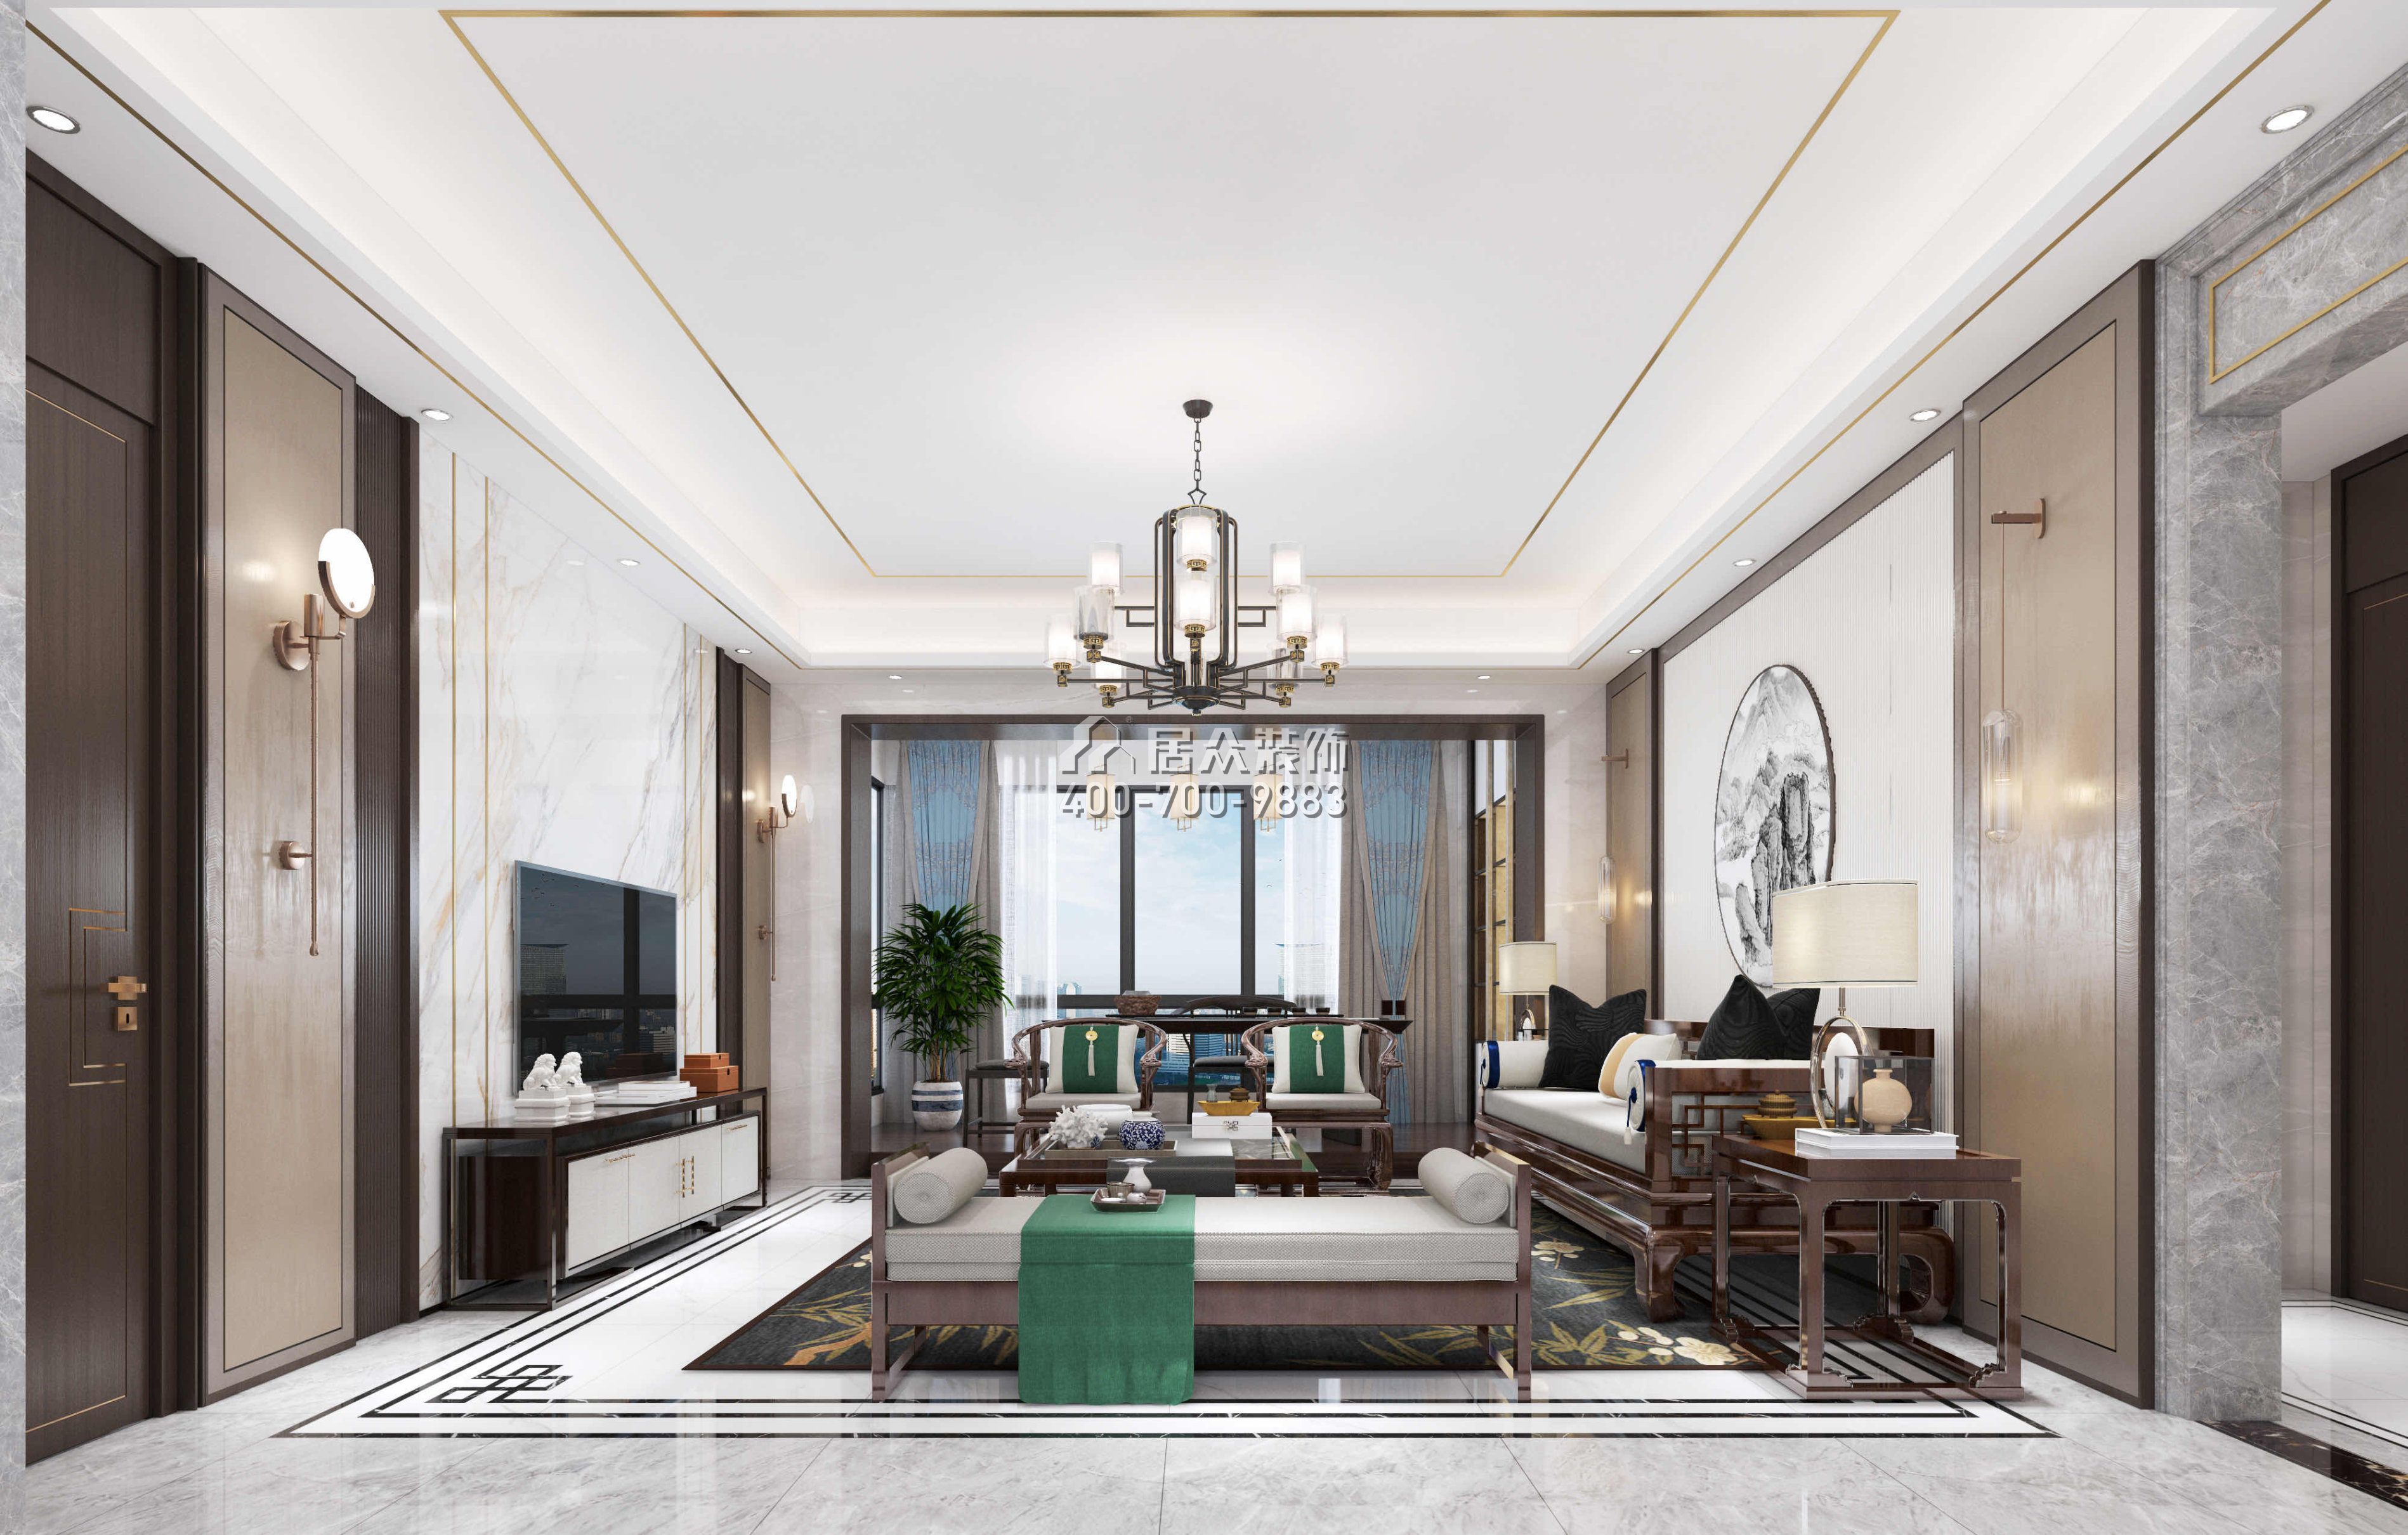 中惠沁林山莊300平方米中式風格復式戶型客廳裝修效果圖